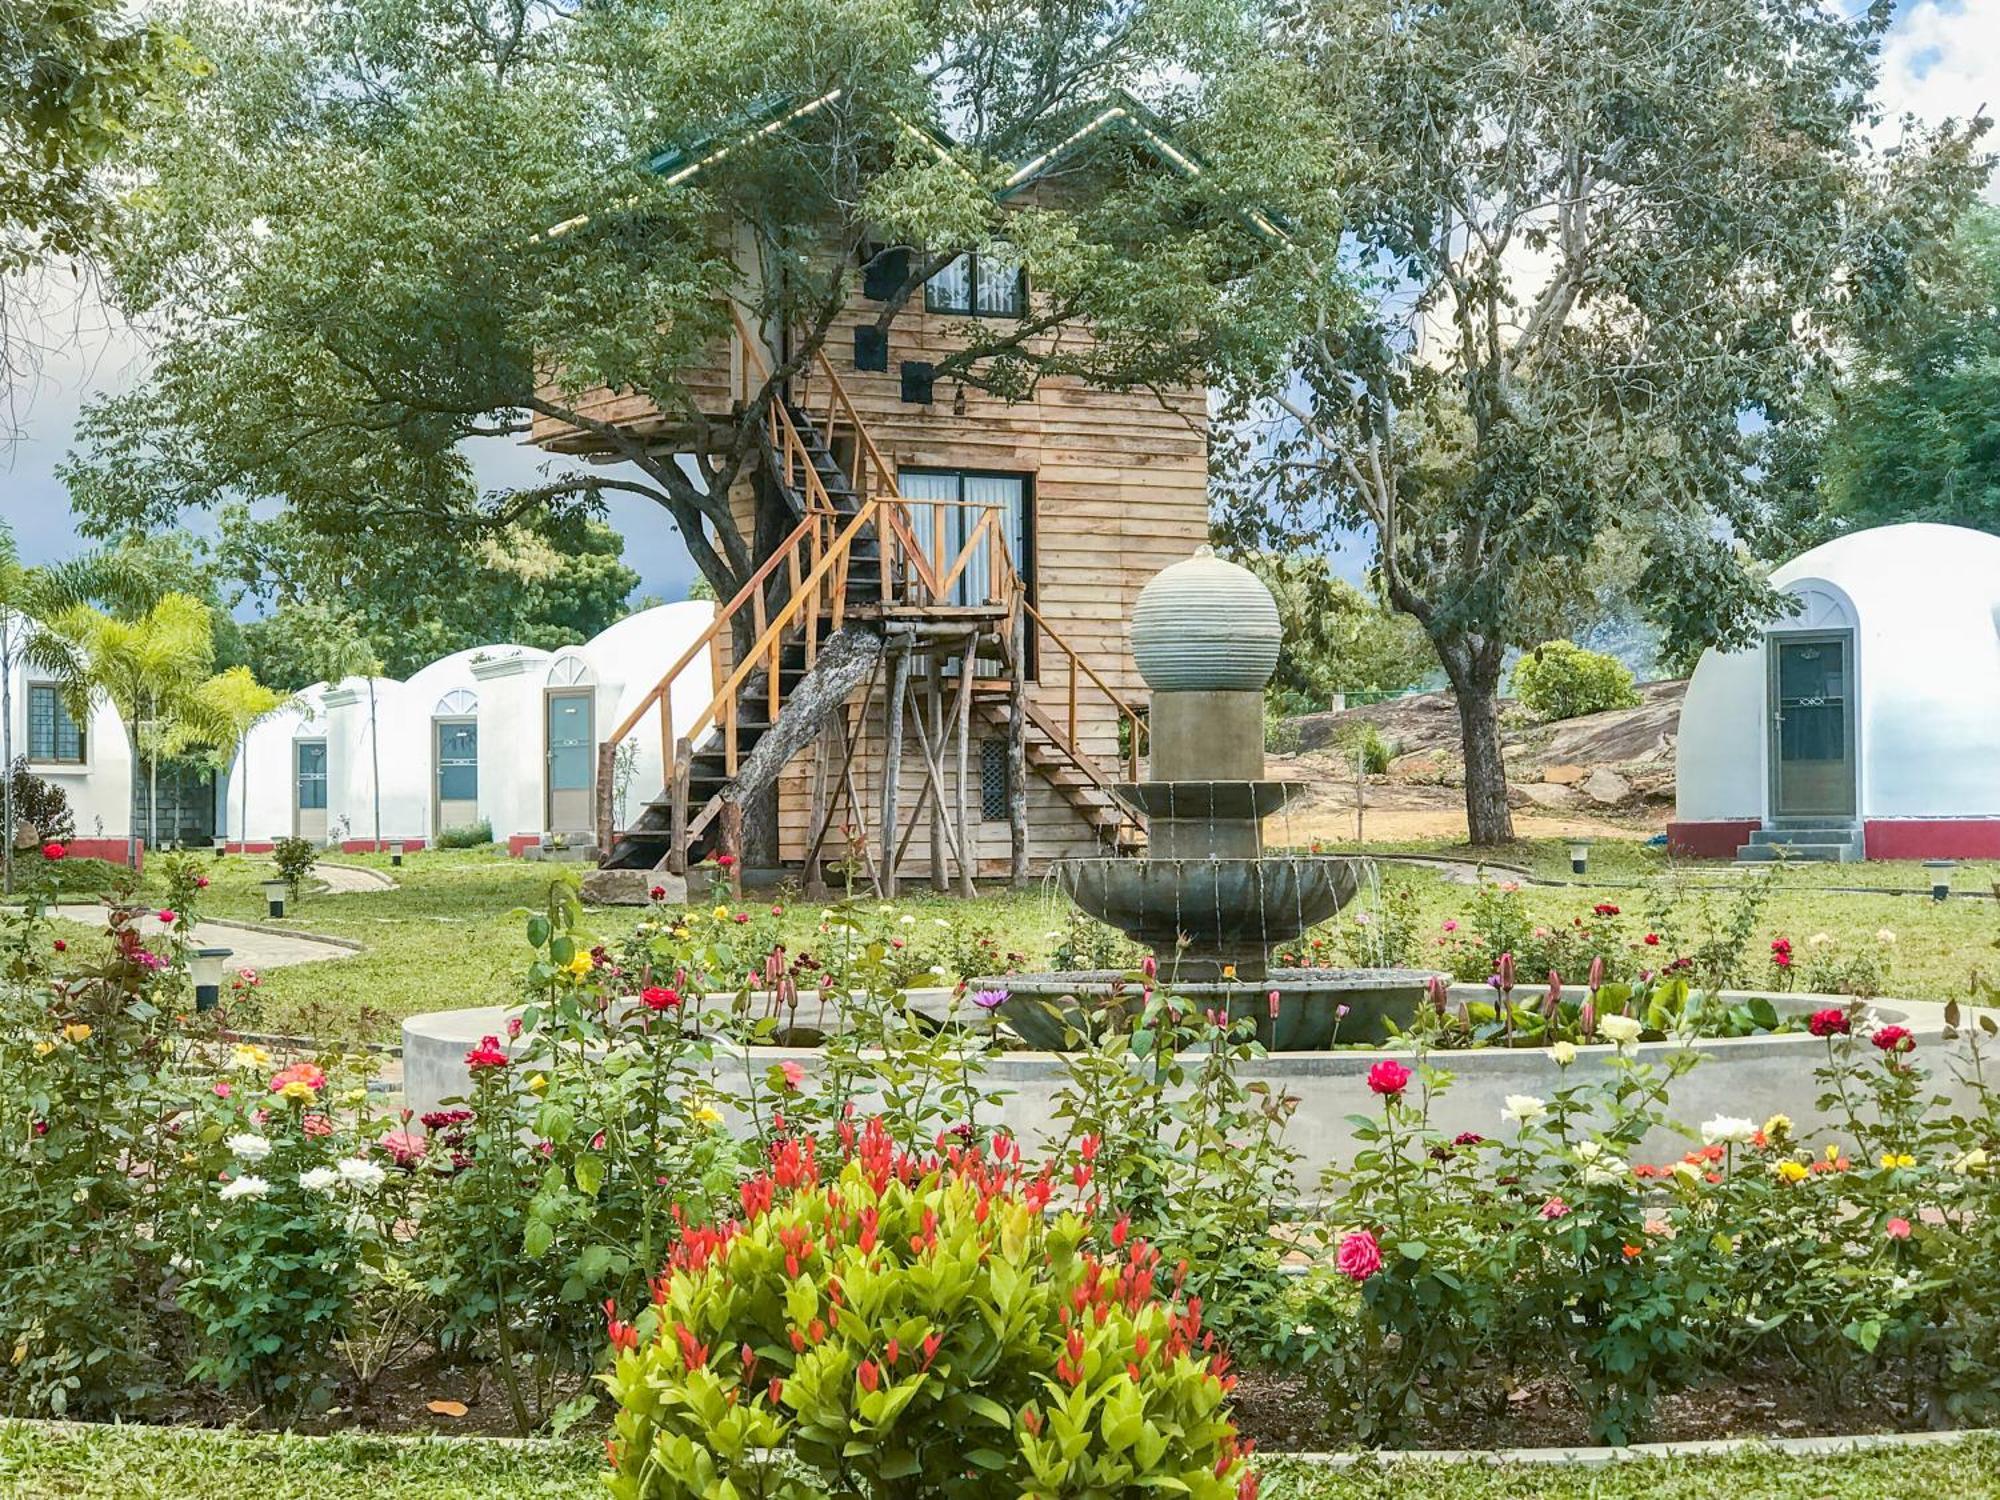 The Lion Kingdom Sigiriya酒店 外观 照片